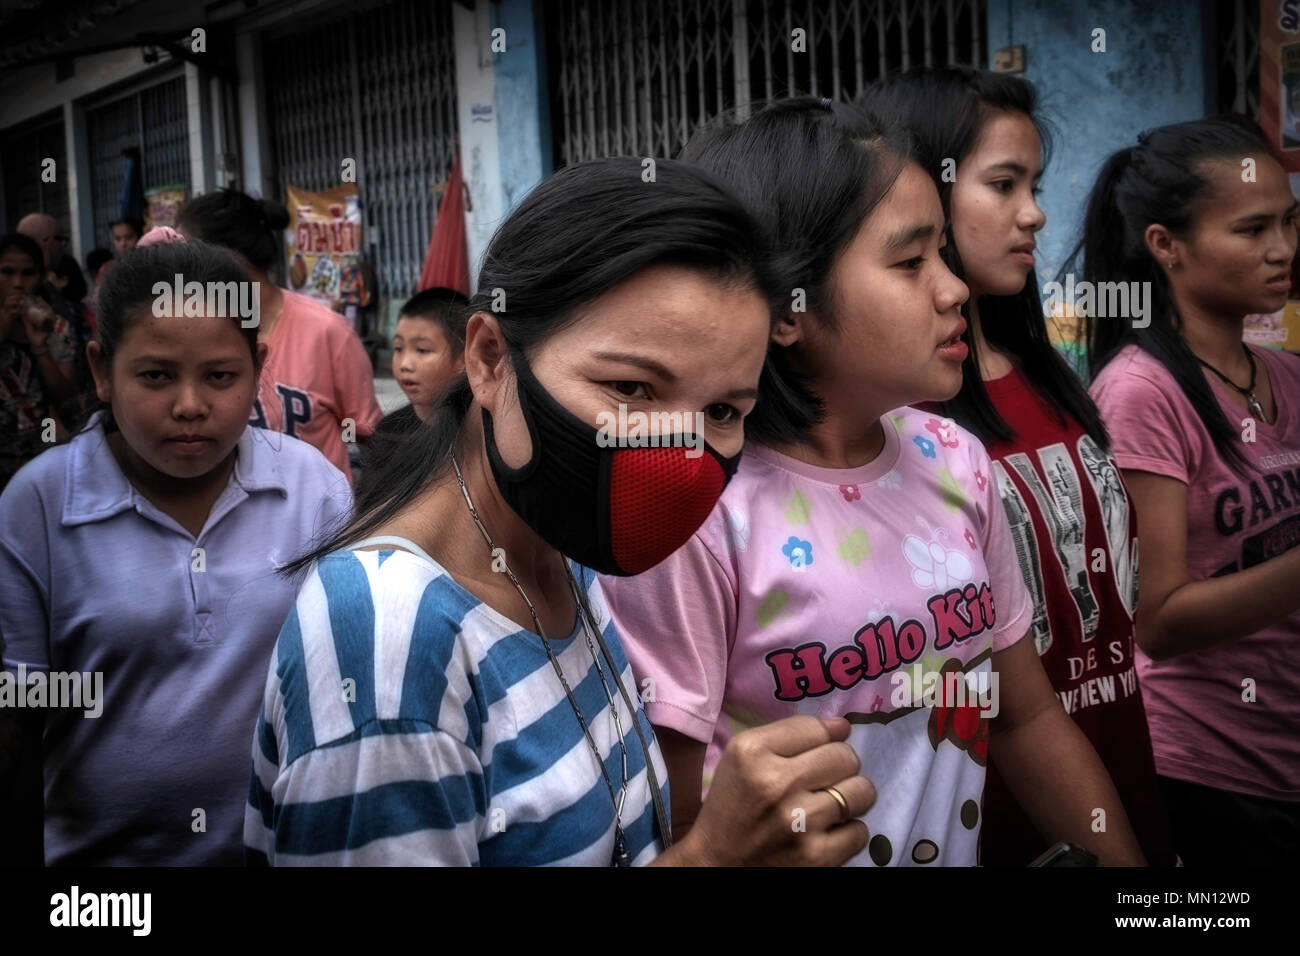 Mascarilla facial para mujer. Mujer que lleva una máscara anticontaminación en un concurrido mercado callejero asiático. Tailandia S. E. Asia Foto de stock